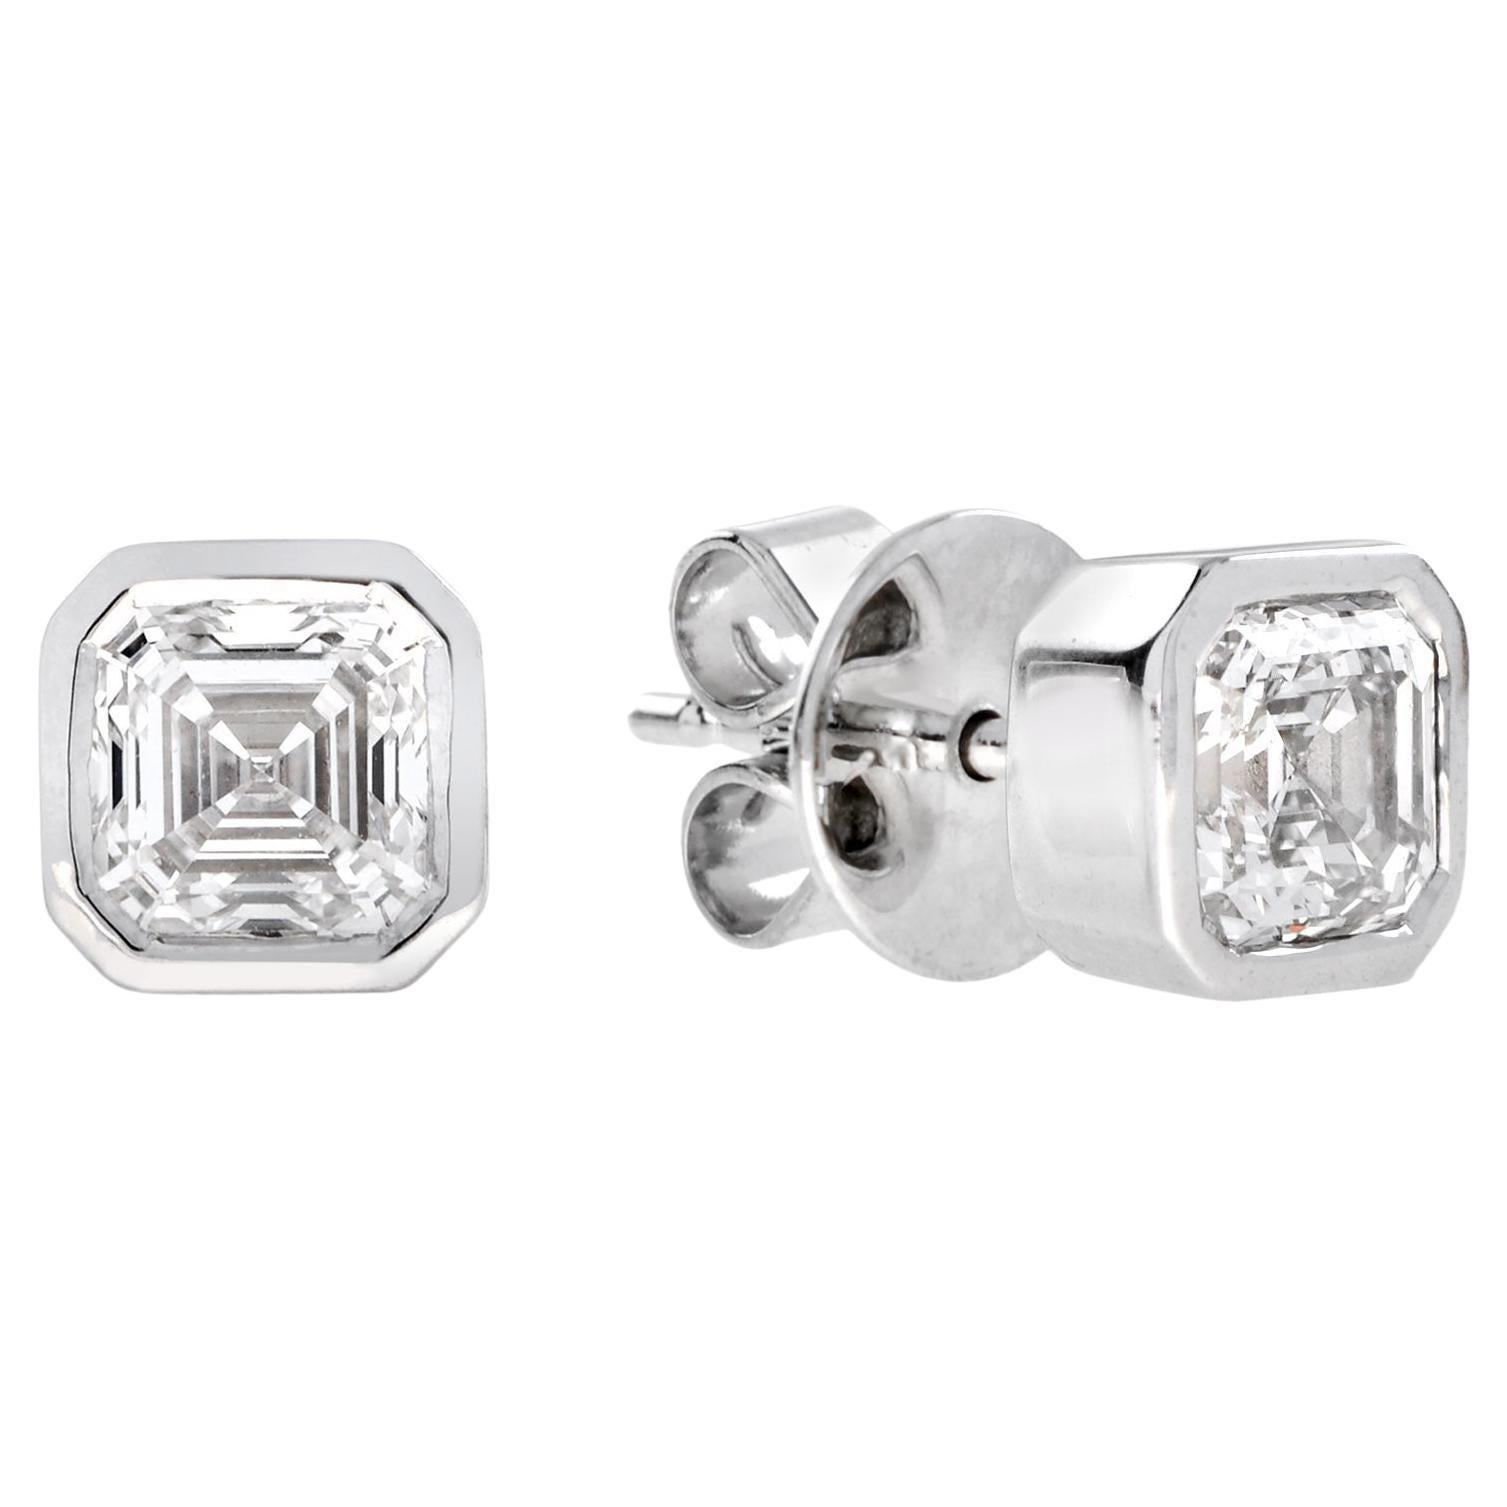 Art Deco Style GIA Certified 1.47 Ct. Diamond Stud Earrings in 18K Gold